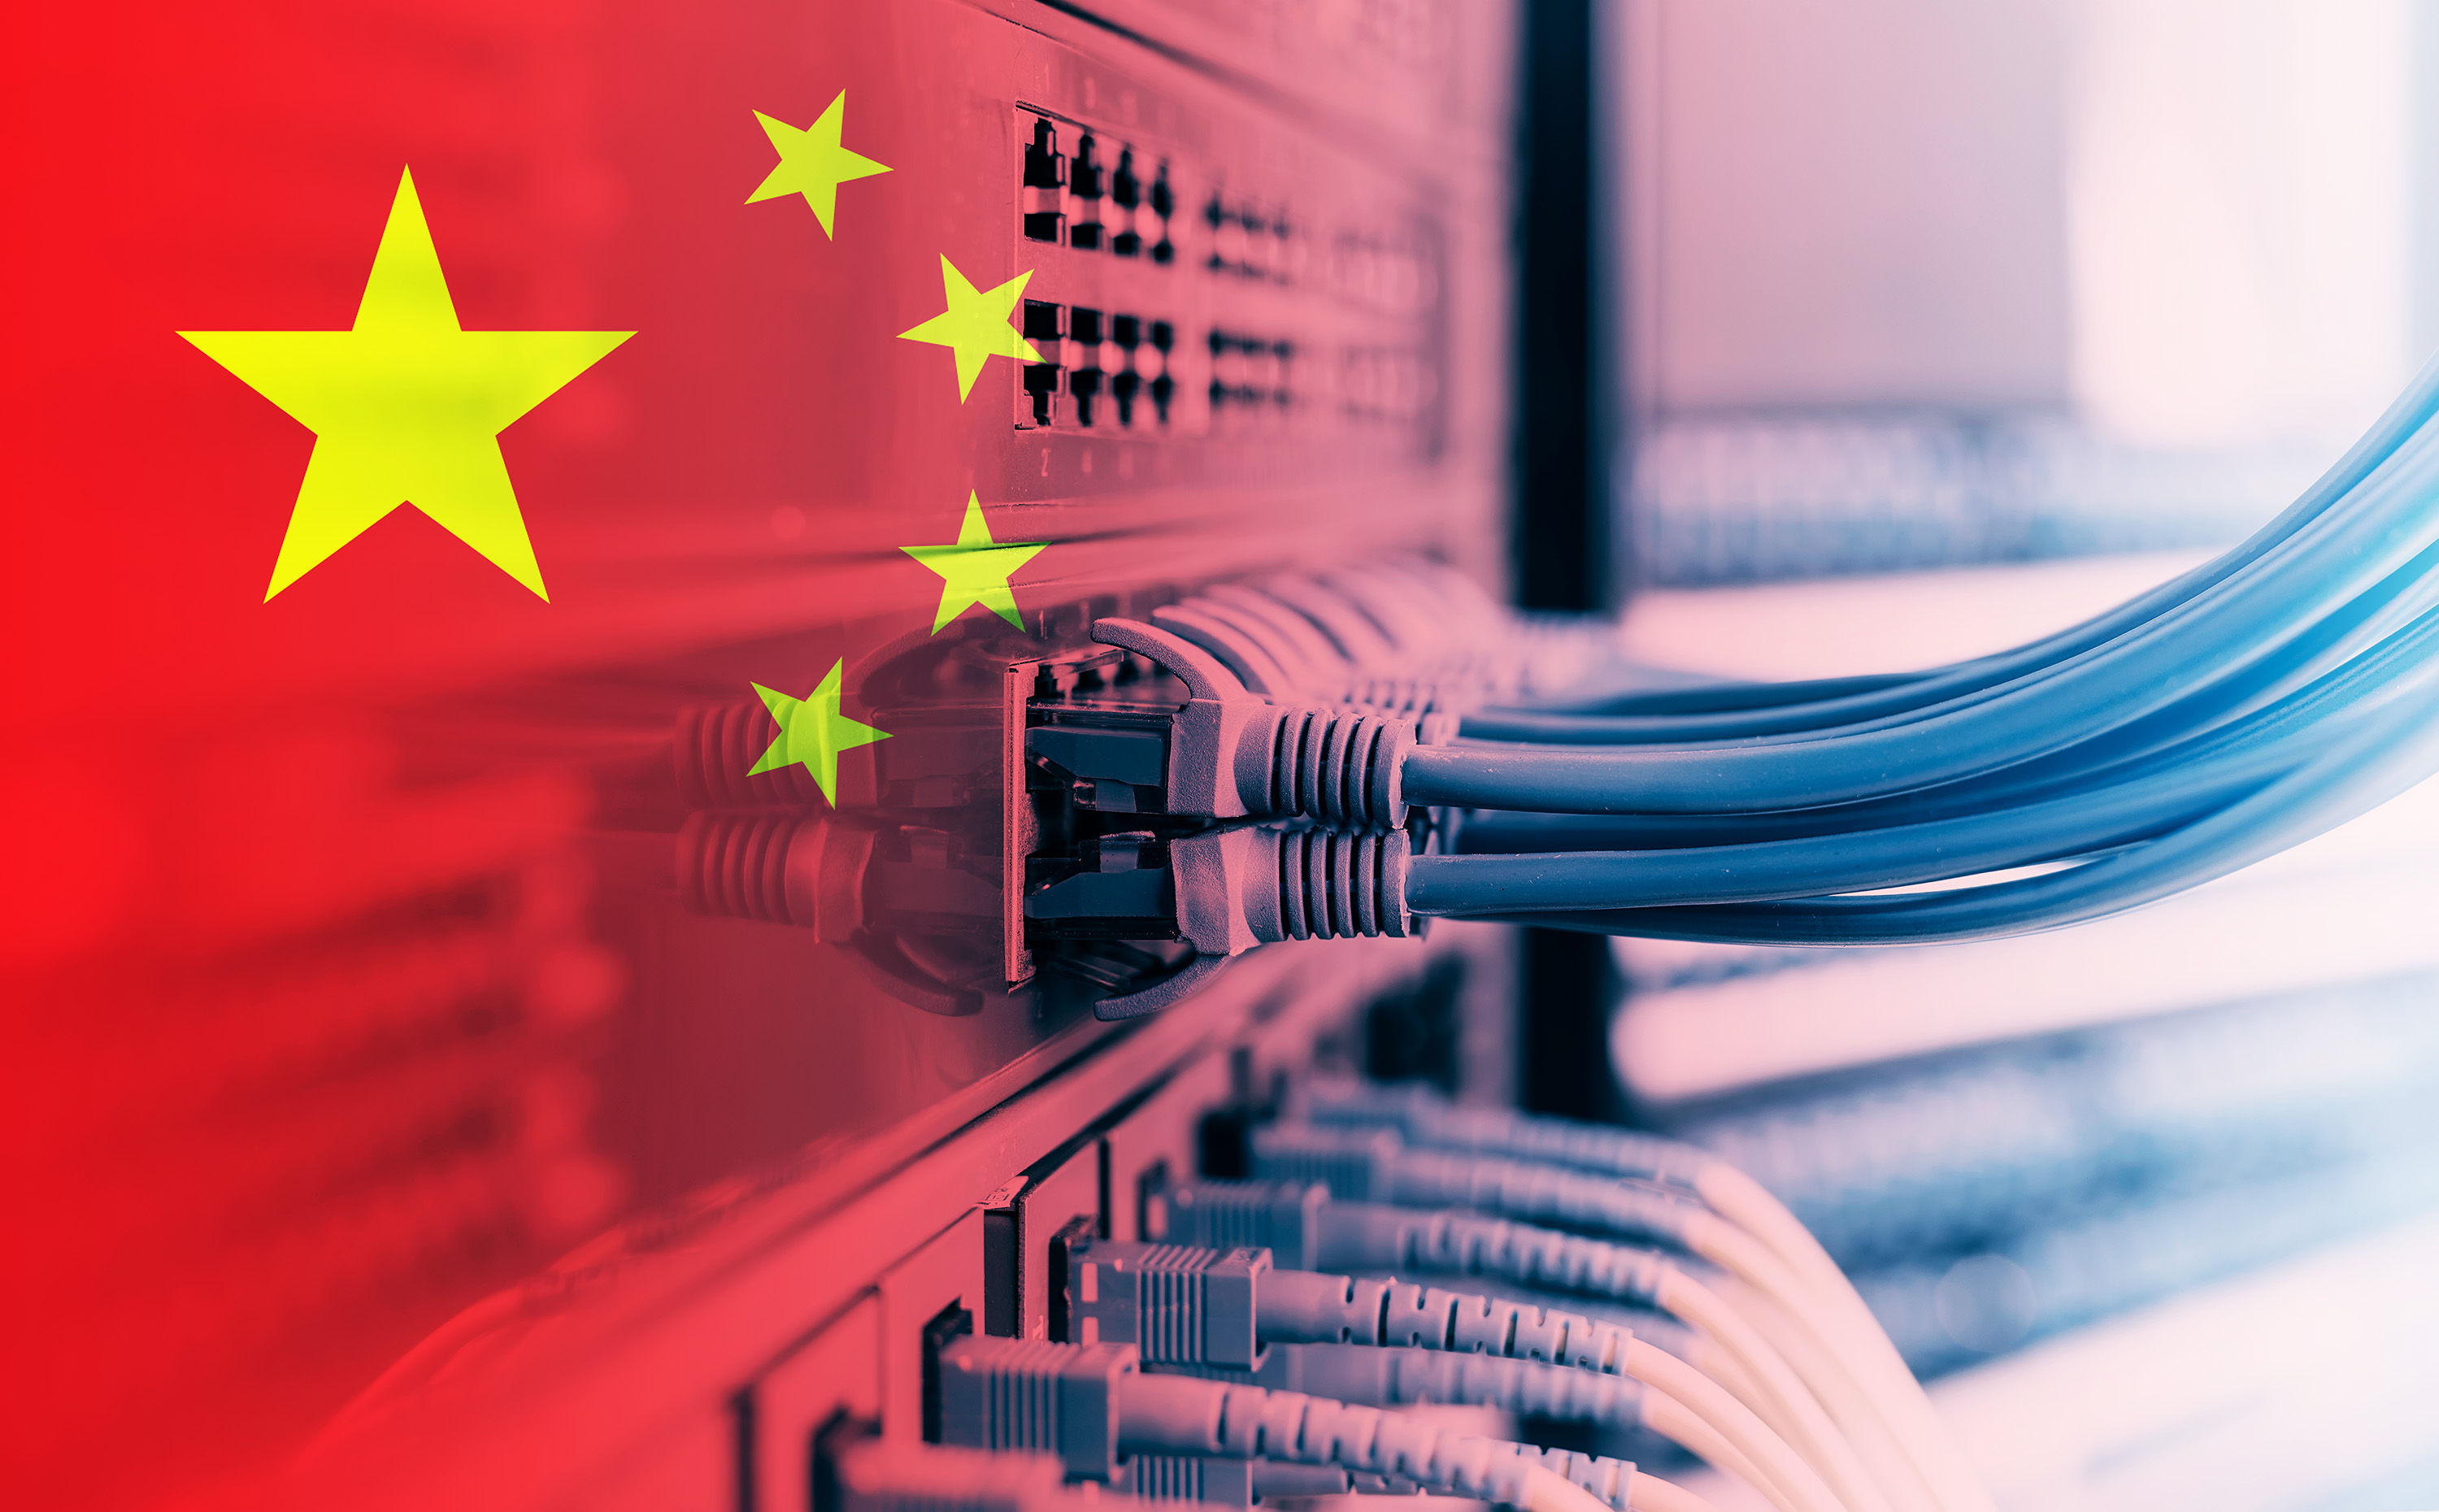 Les hackers de la Chine se seraient glissés dans les infrastructures critiques des États-Unis depuis des années